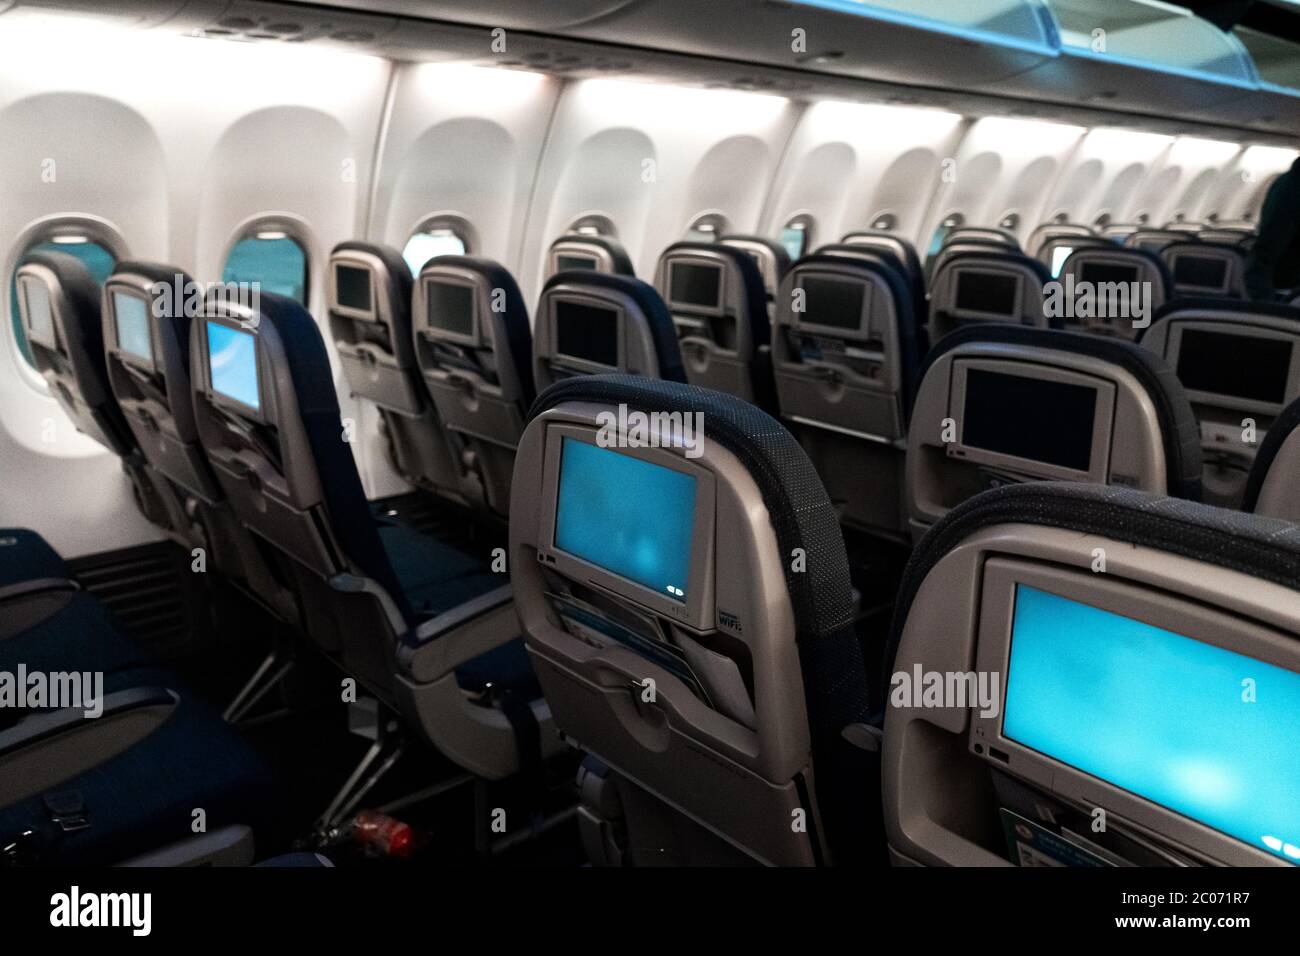 L'interno dell'aeromobile. Cabina vuota dell'aereo. File di sedili  passeggeri con schermi nei poggiatesta Foto stock - Alamy